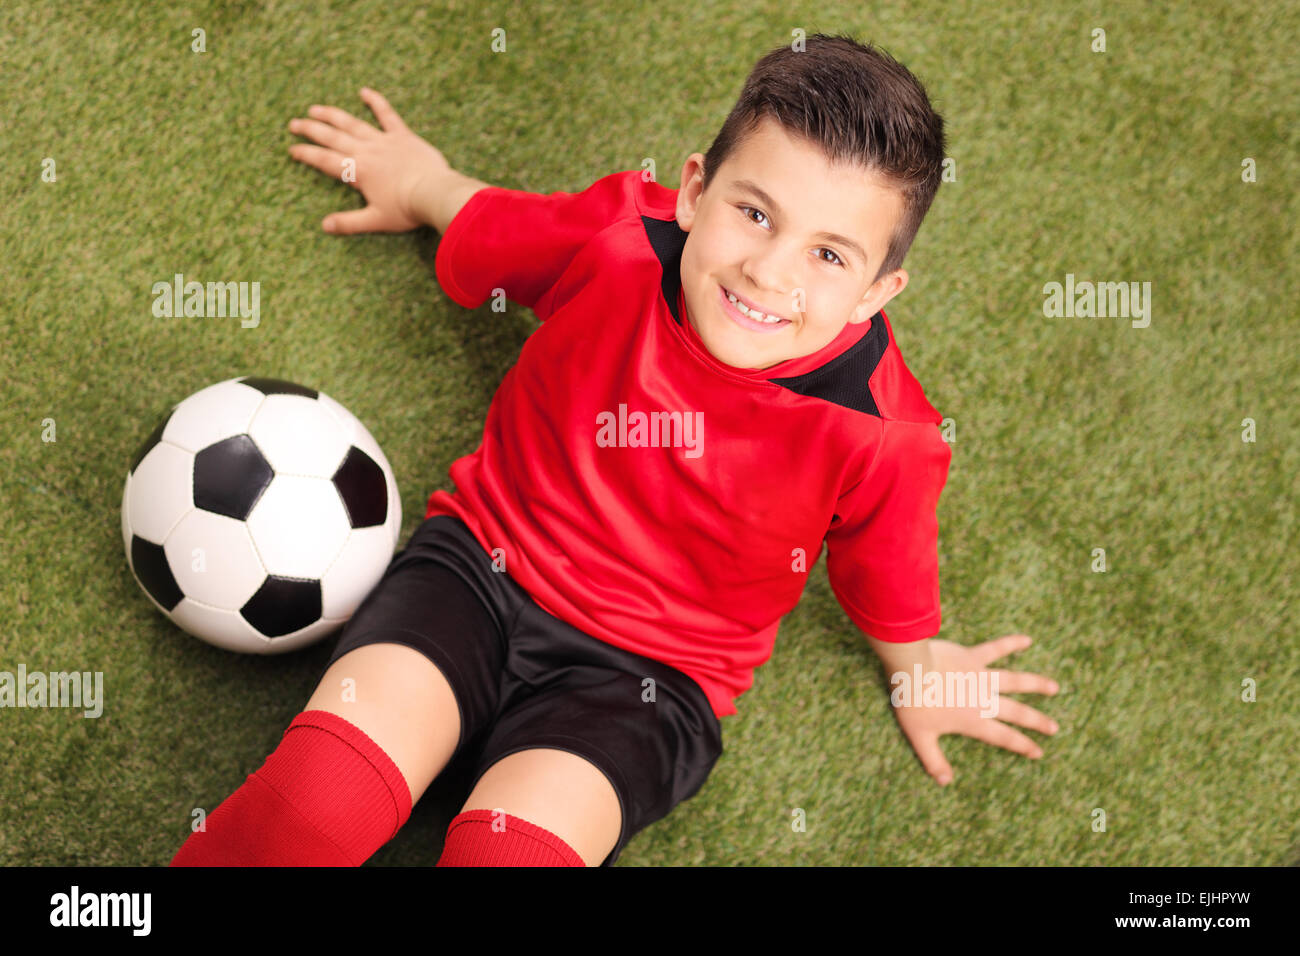 Hohen Winkel Schuss eines junior Fußballspielers in roten Trikots, sitzen auf der grünen Wiese und schaut in die Kamera, mit einem Fußball Stockfoto